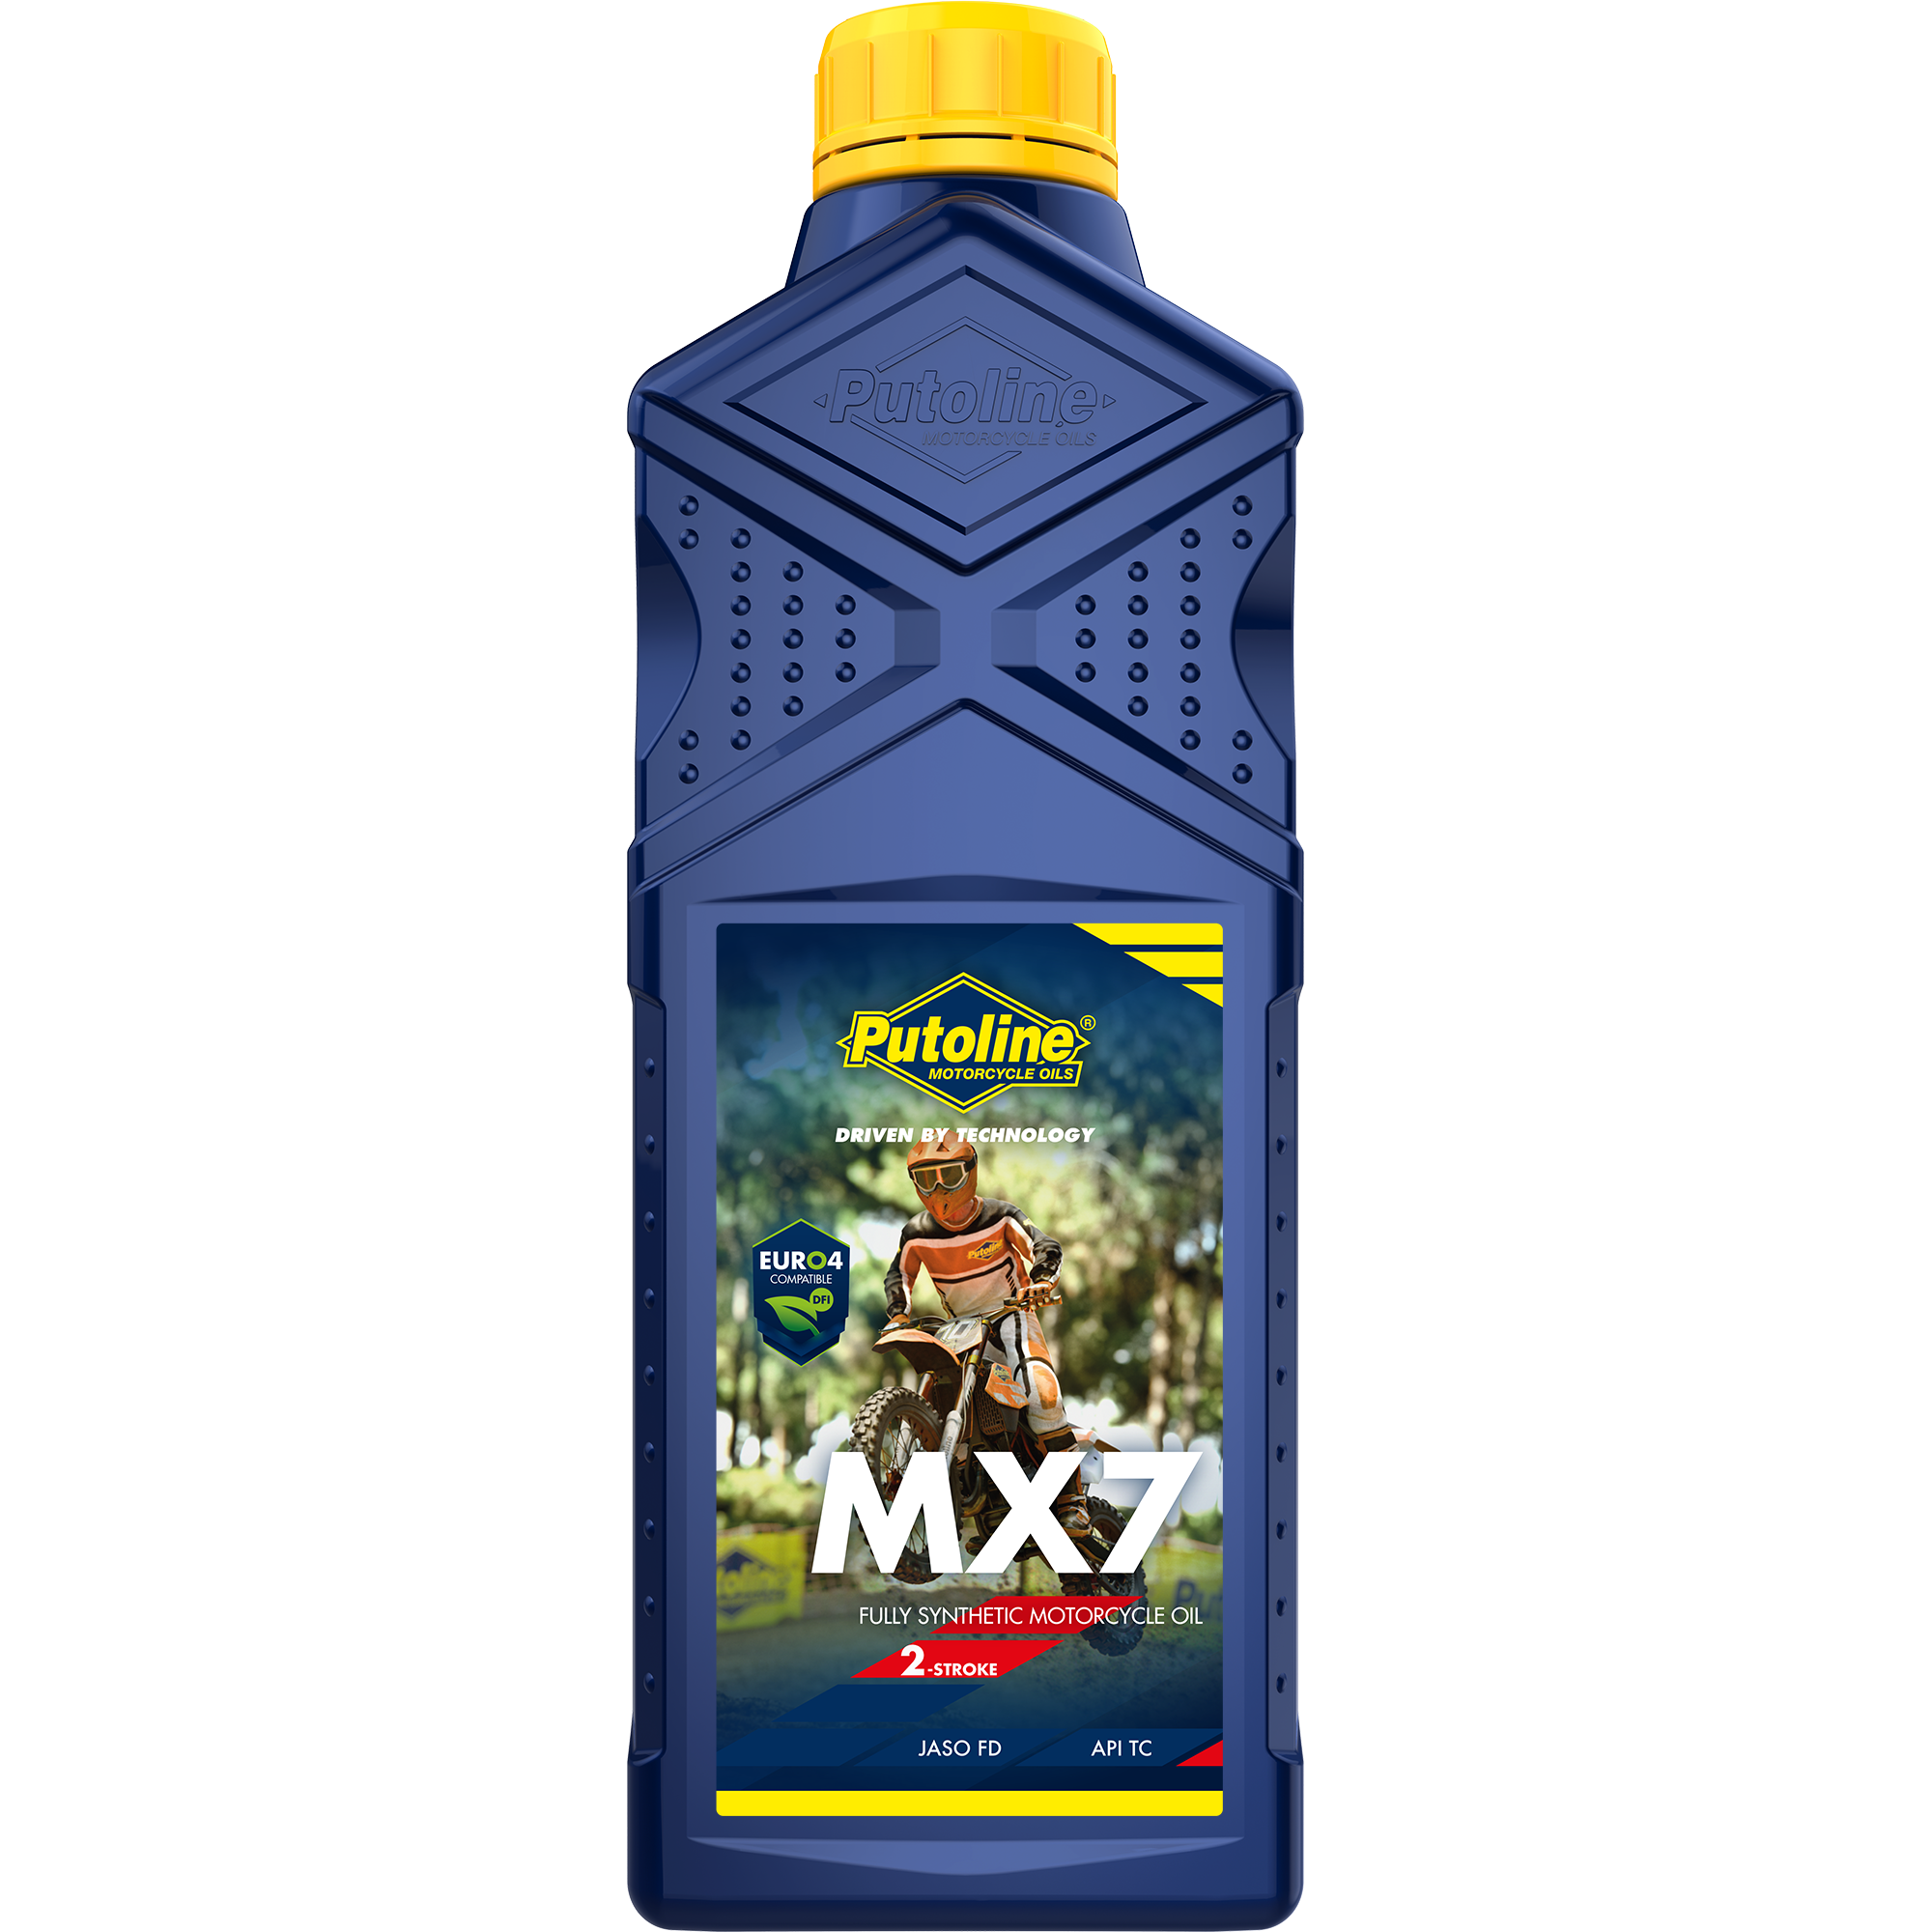 Putoline MX 7, 1 lt